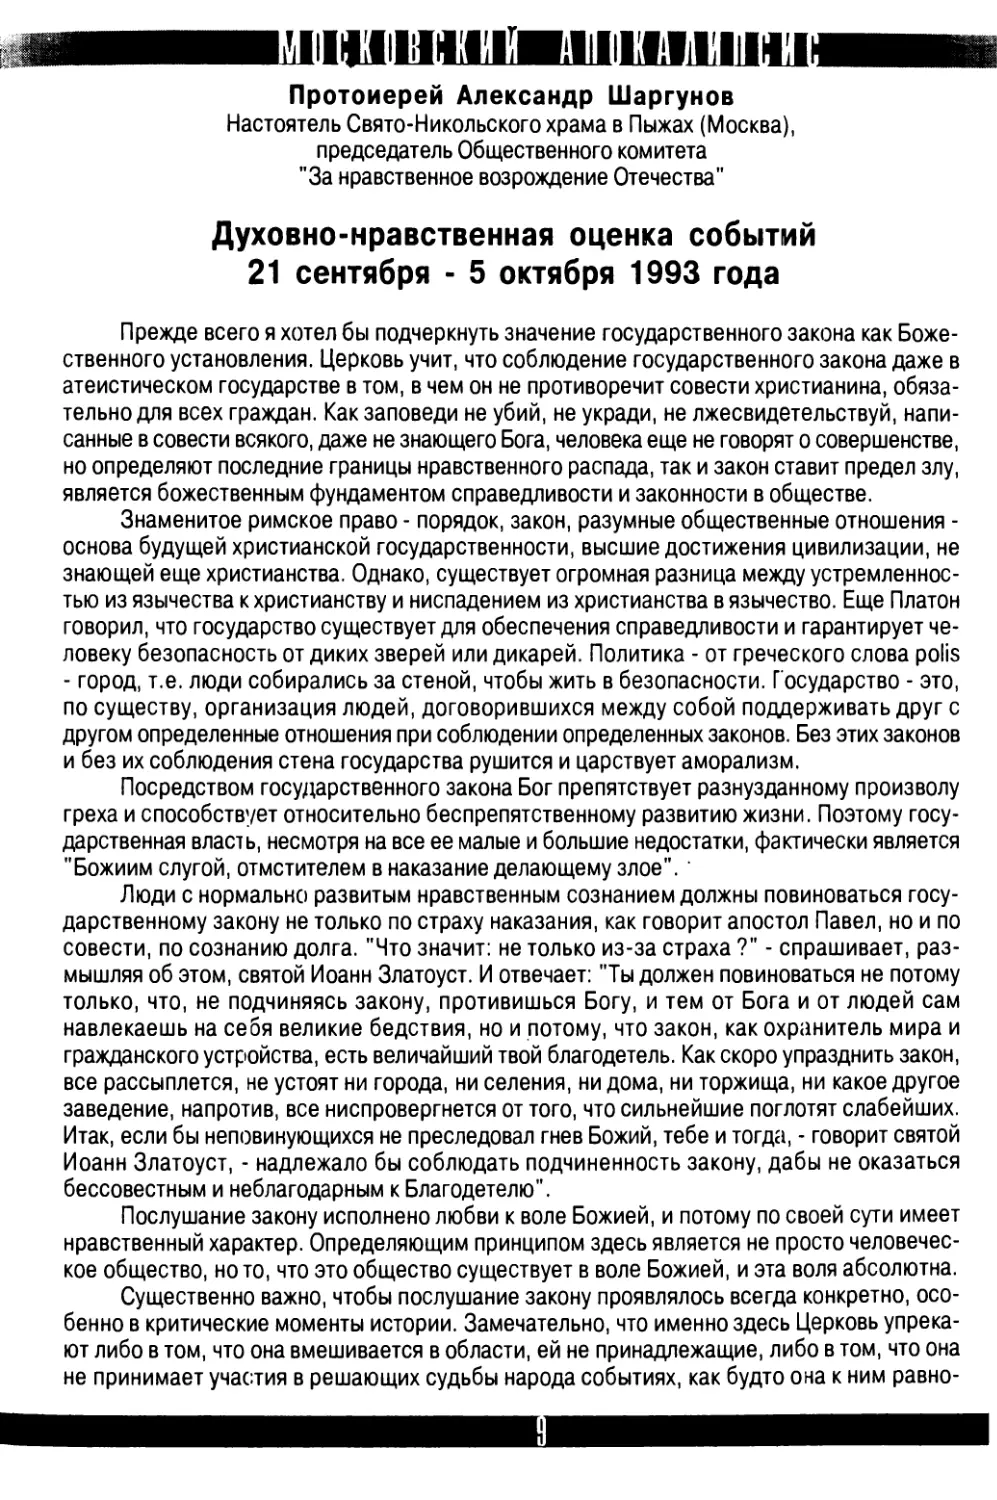 Протоиерей  Александр  Шаргунов.  Духовно-нравственная  оценка  событий  21  сентября  -  5  октября  1993  года